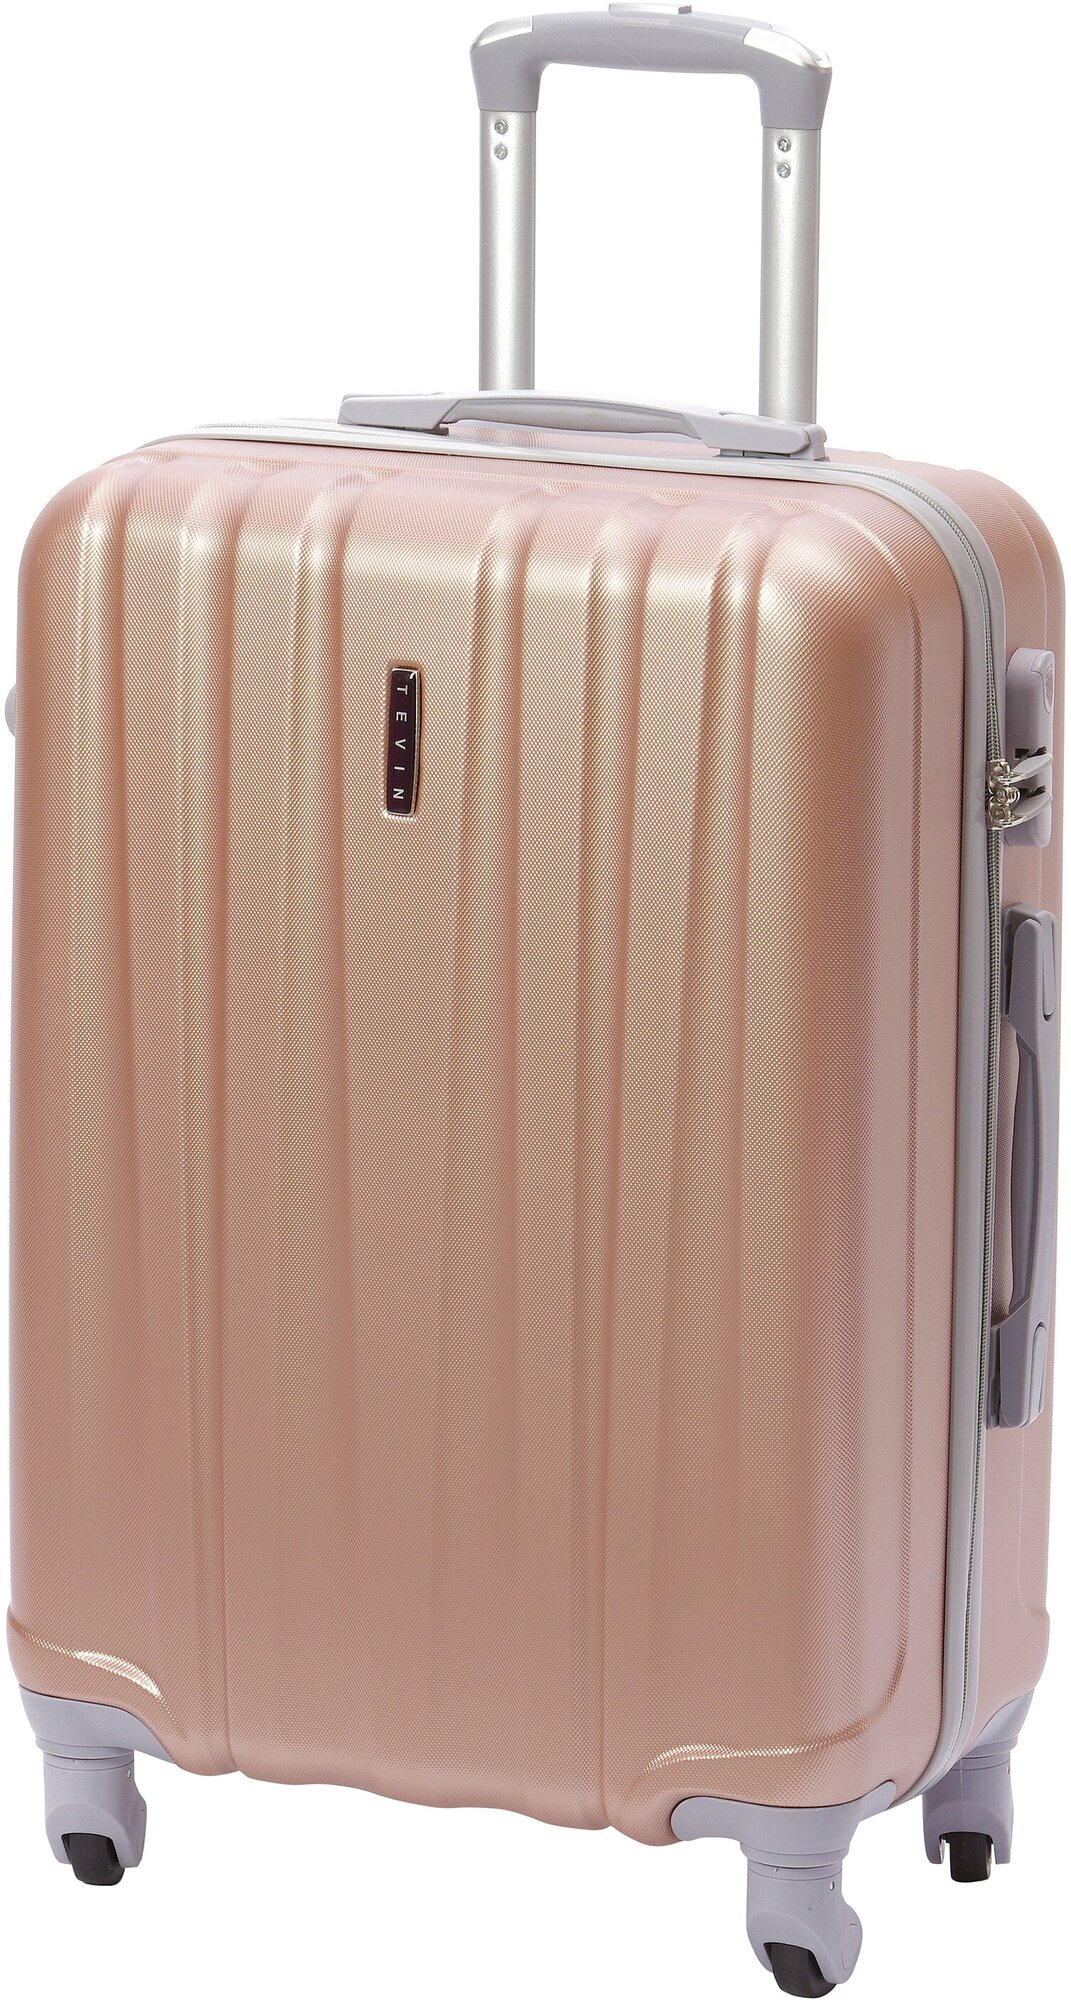 Чемодан на колесах дорожный большой семейный багаж для путешествий l+ TEVIN размер Л+ 76 см xl 120 л xxl прочный поликарбонат светлый Розовый